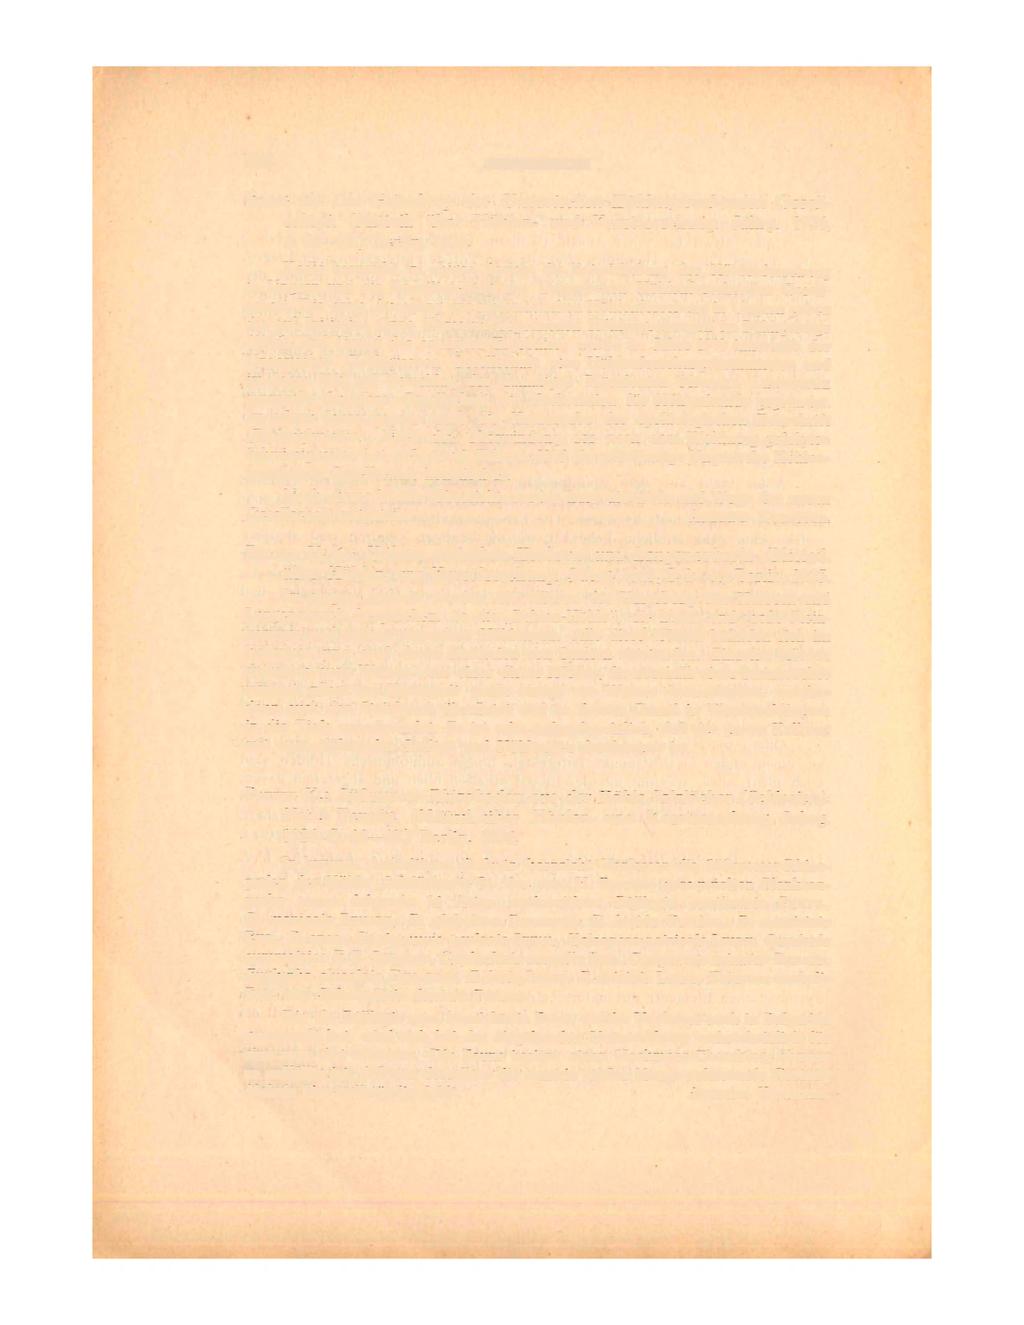 108 BESPRECHUNGEN KADIC O.: Die Gründung der Ungarischen Höhlenforschenden Gesellschaft. (Mitteil. über Höhlen- und Karstforschung. Jahrg. 1926, S. 86 90.) Berlin, 1926.